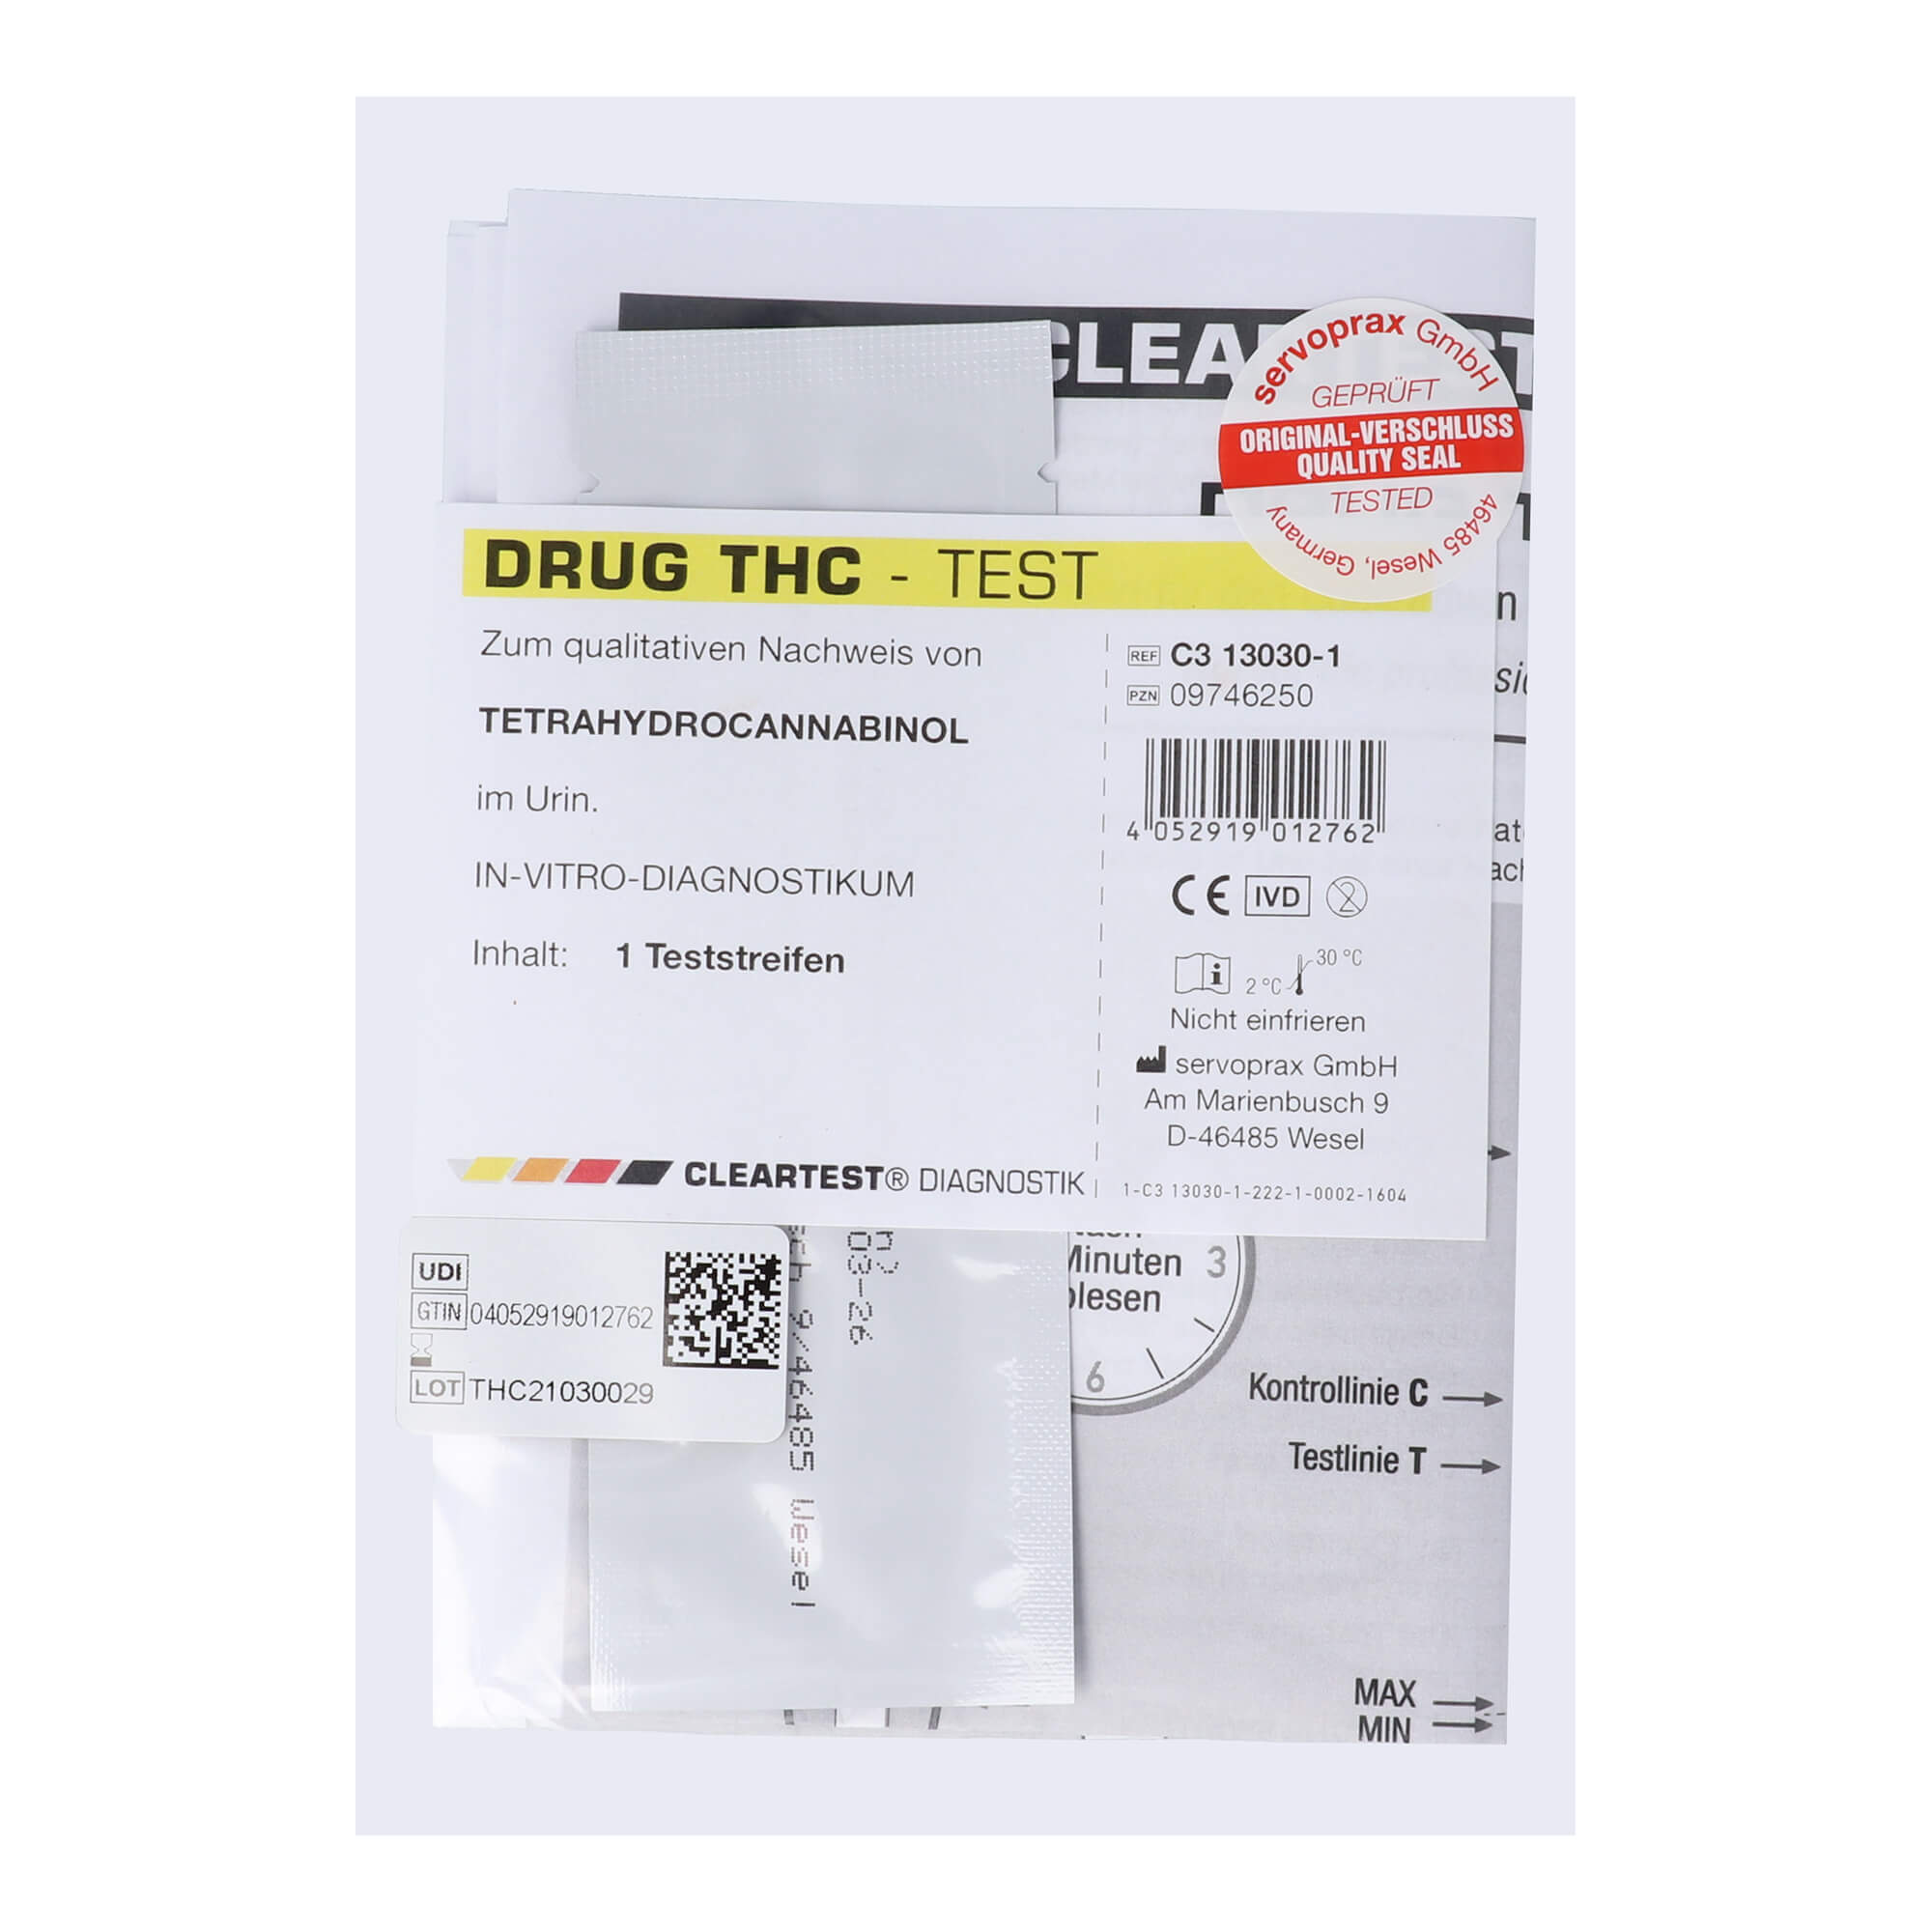 Drogenteststreifen für den qualitativen Nachweis von Tetrahydrocannabinol im Urin. Nur für die professionelle In-vitro-Diagnostik.